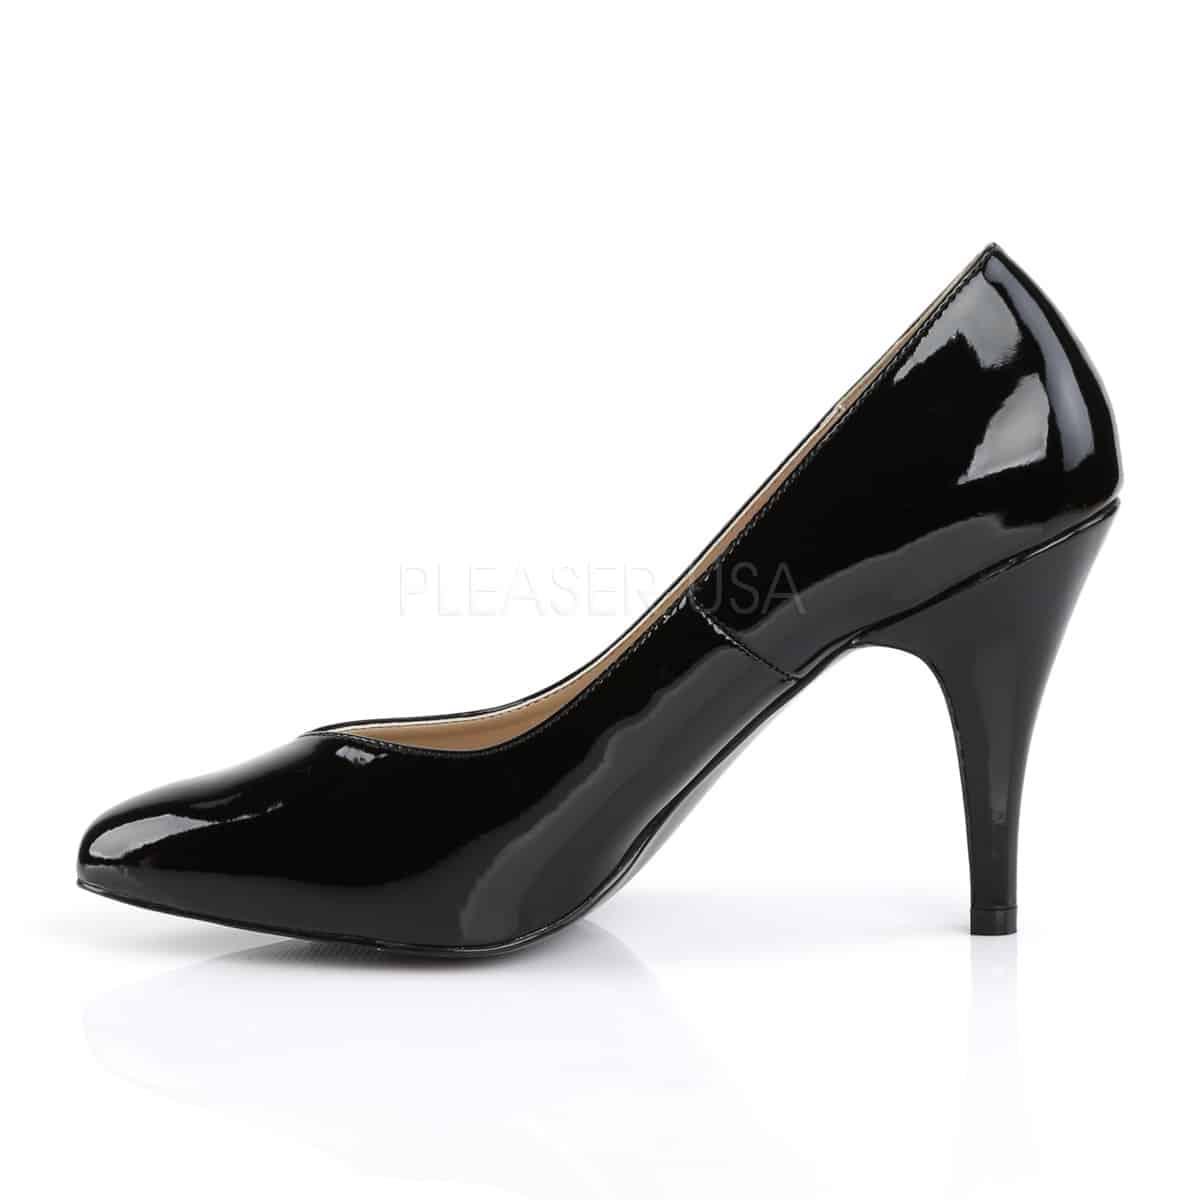 4 inch pleaser heels